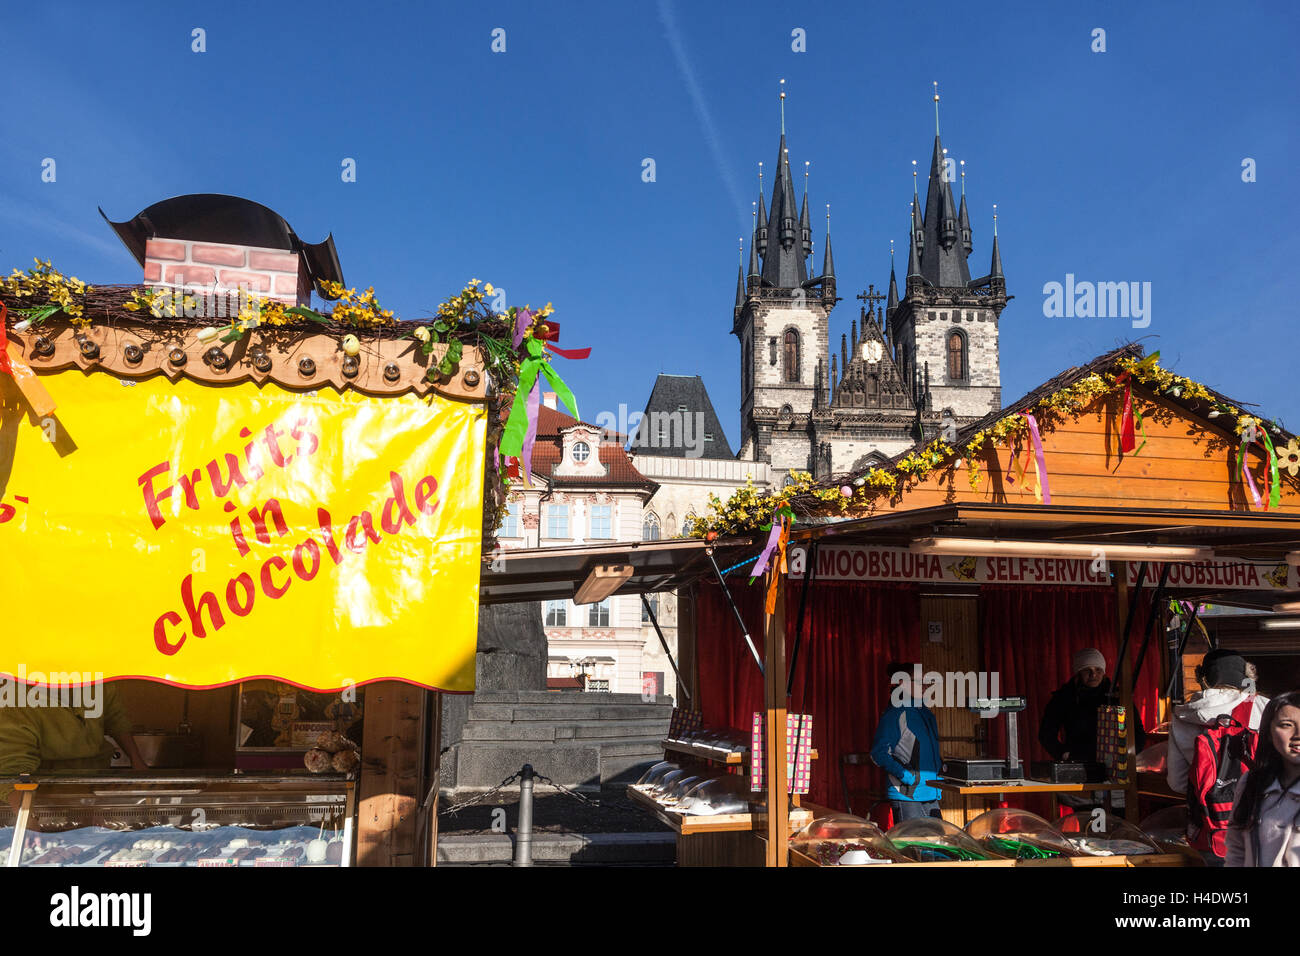 Au cours de la place de la vieille ville, les marchés de Pâques à Prague, République Tchèque Banque D'Images